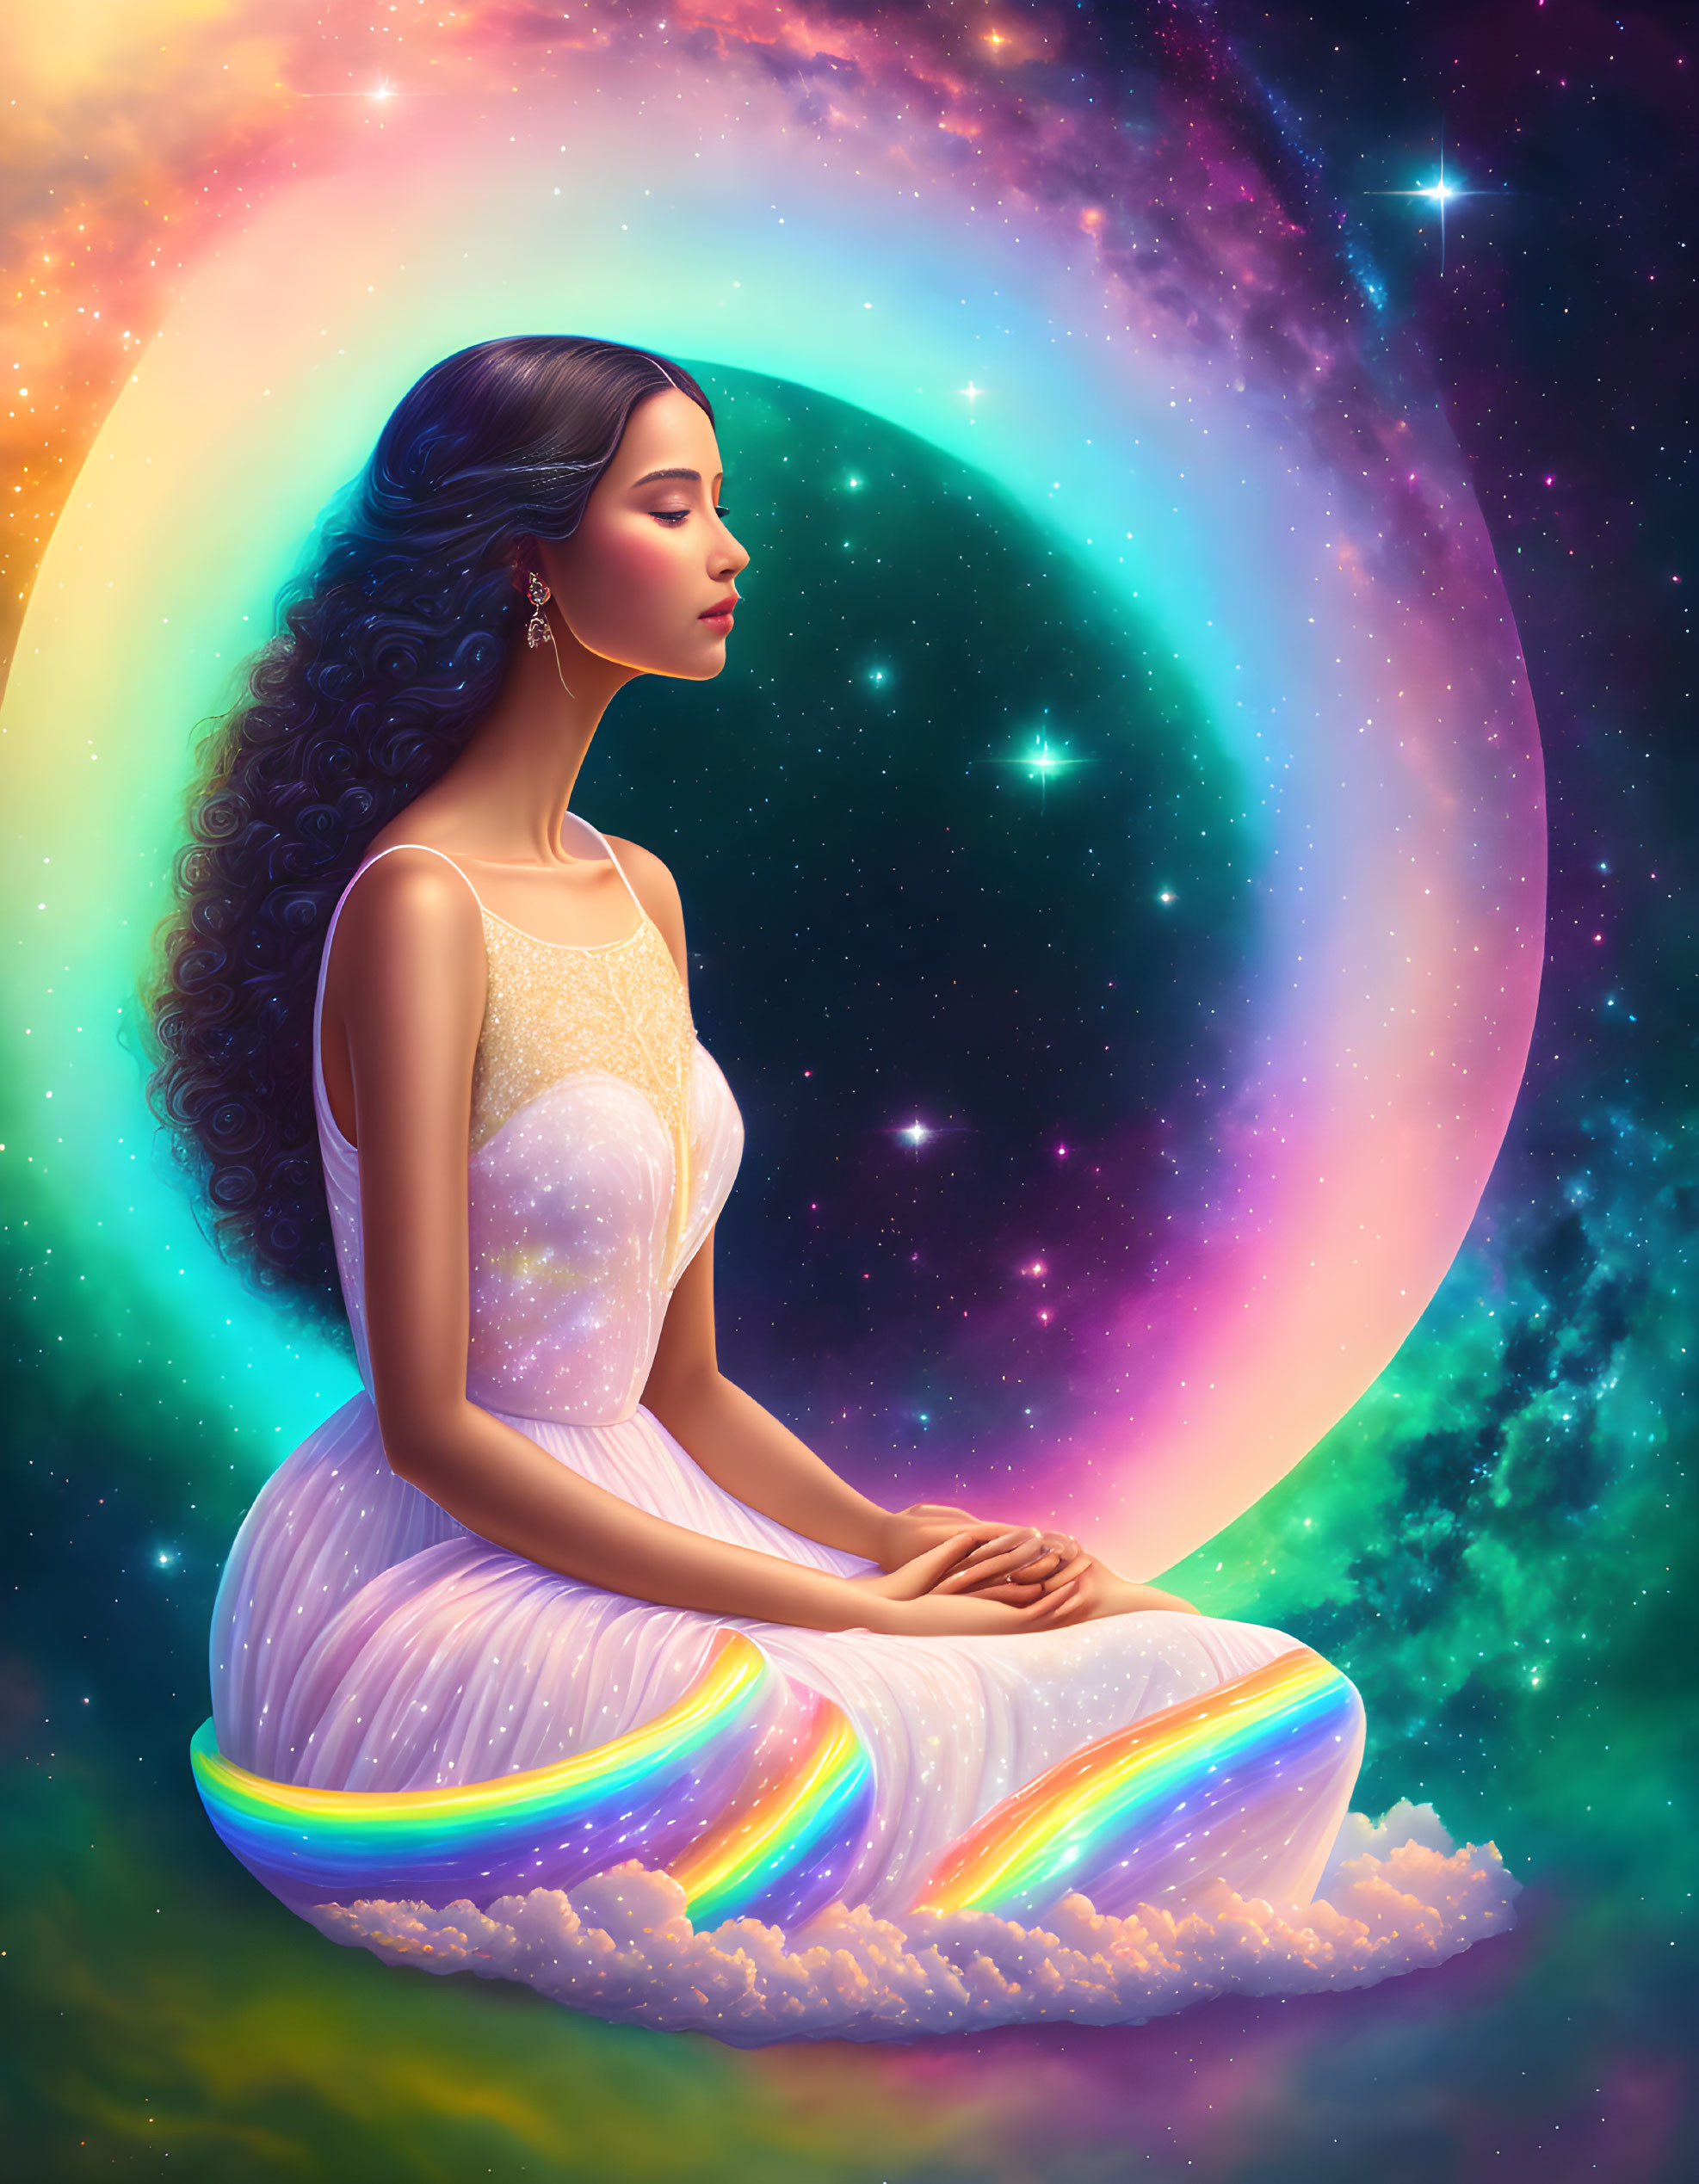 Serene woman meditating in vibrant cosmic scene